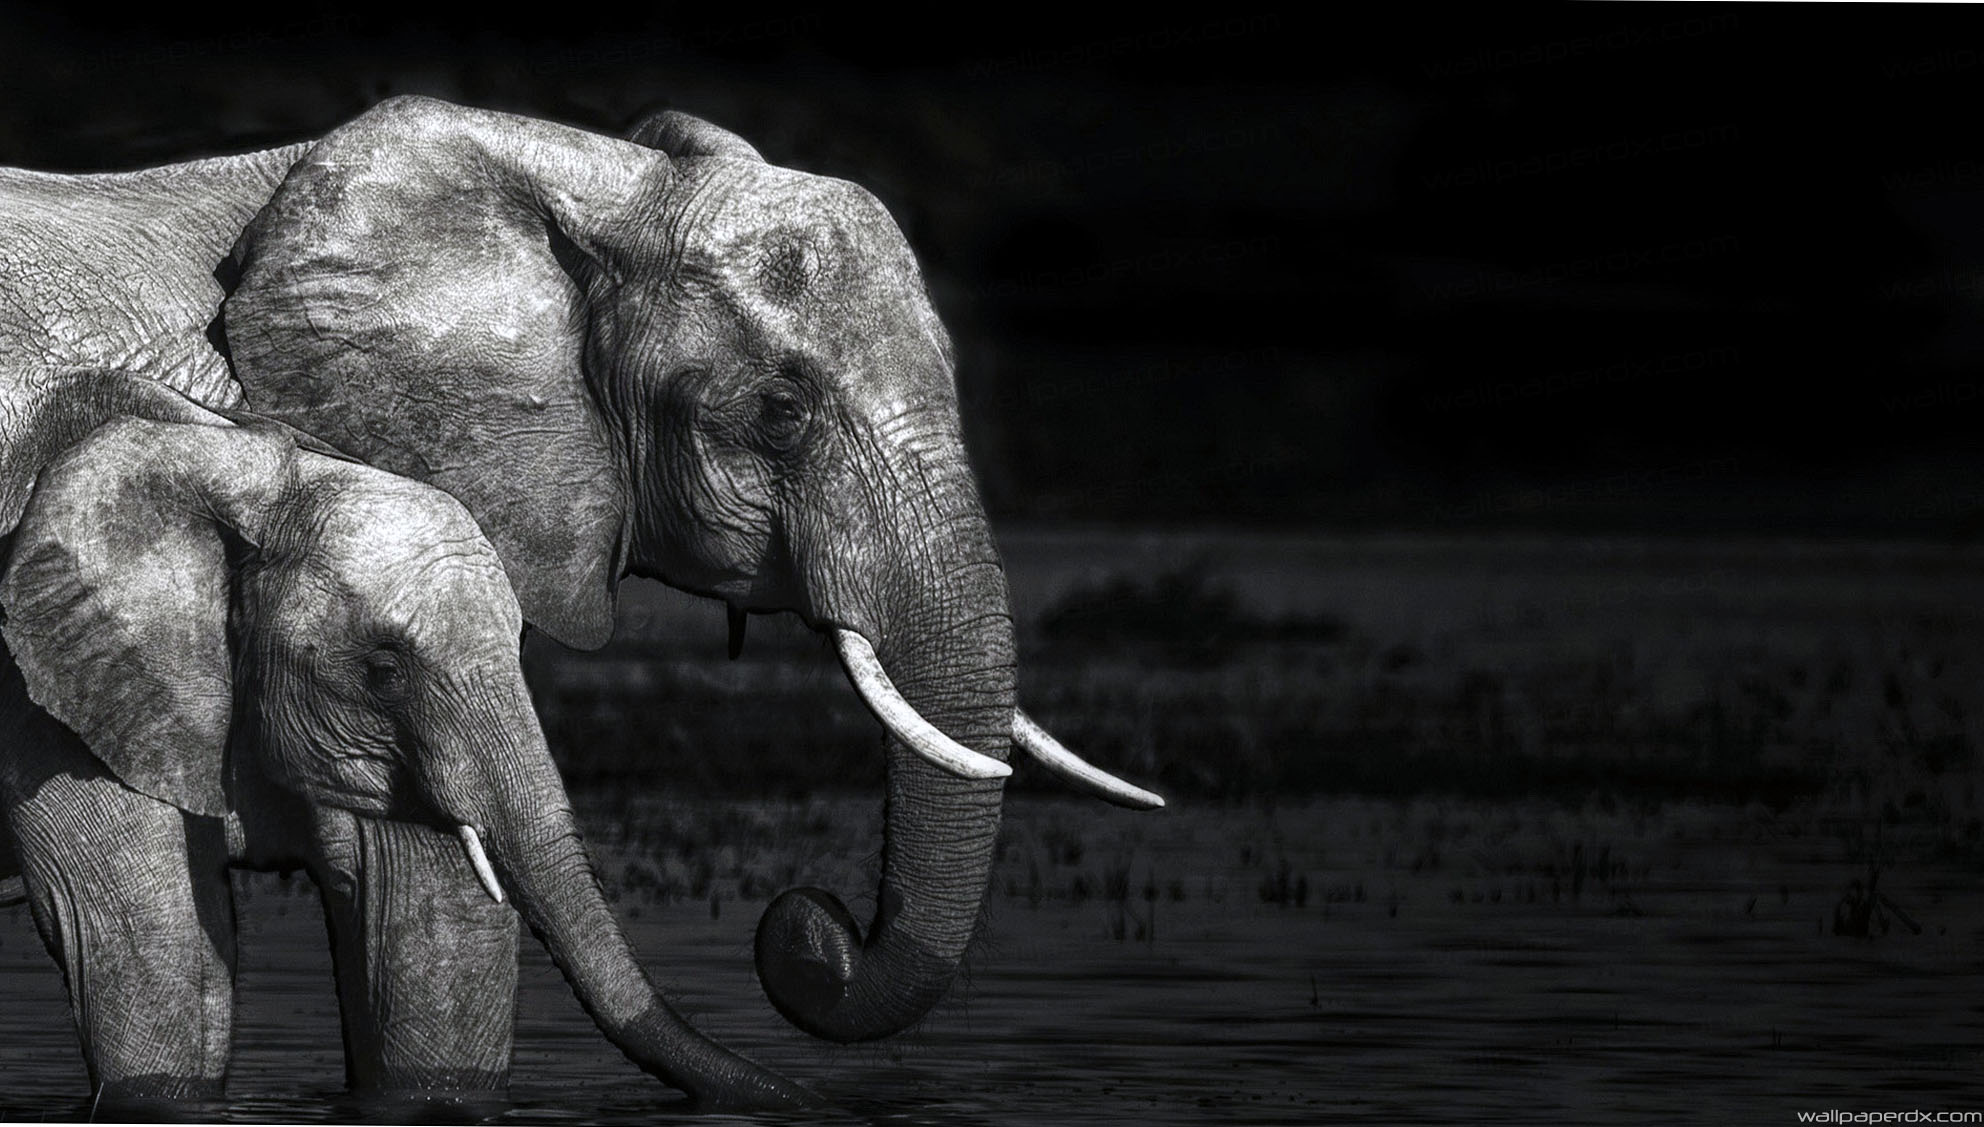 코끼리 라이브 벽지,코끼리,코끼리와 매머드,지상파 동물,인도 코끼리,검정